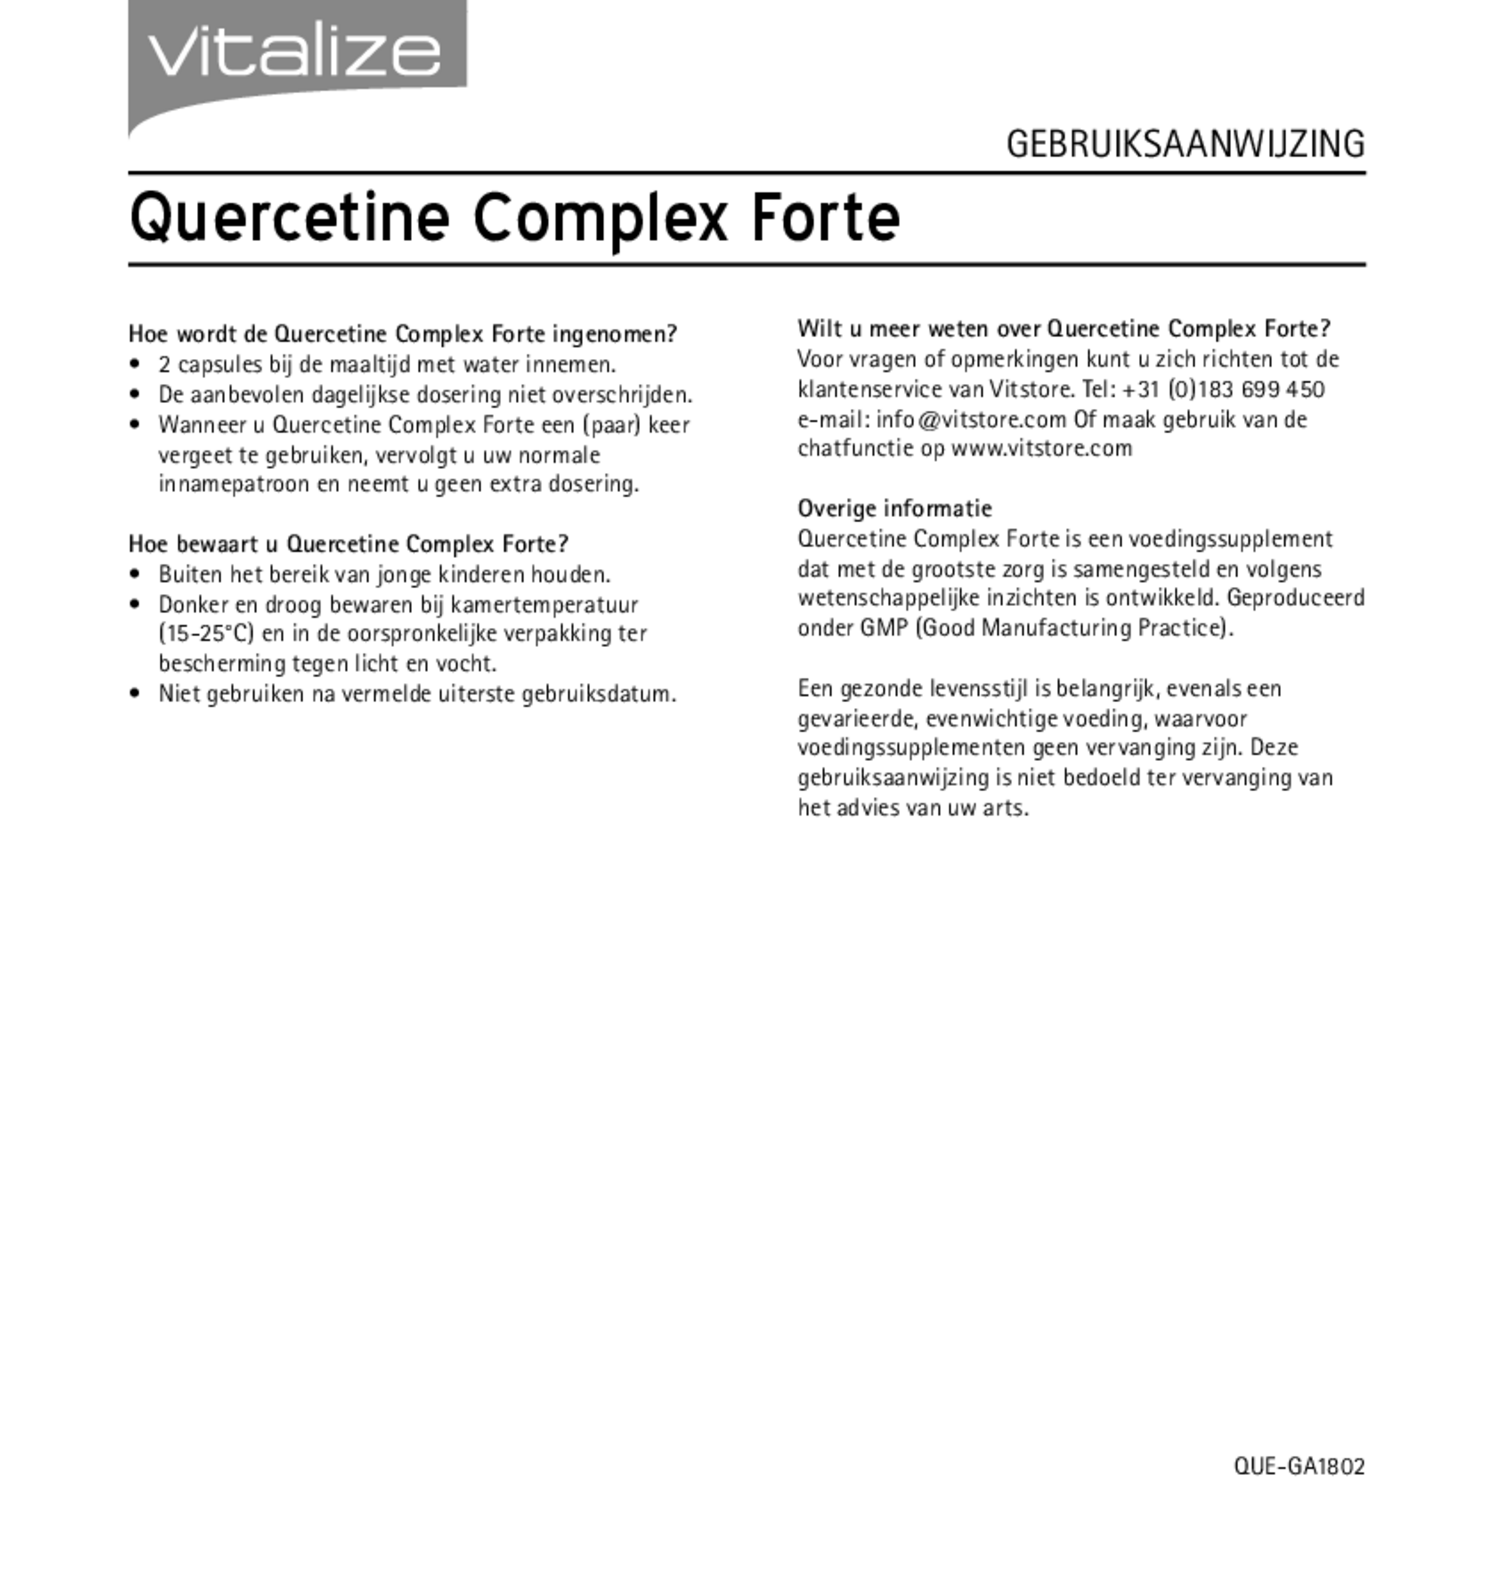 Quercetine Complex Forte Capsules afbeelding van document #2, gebruiksaanwijzing